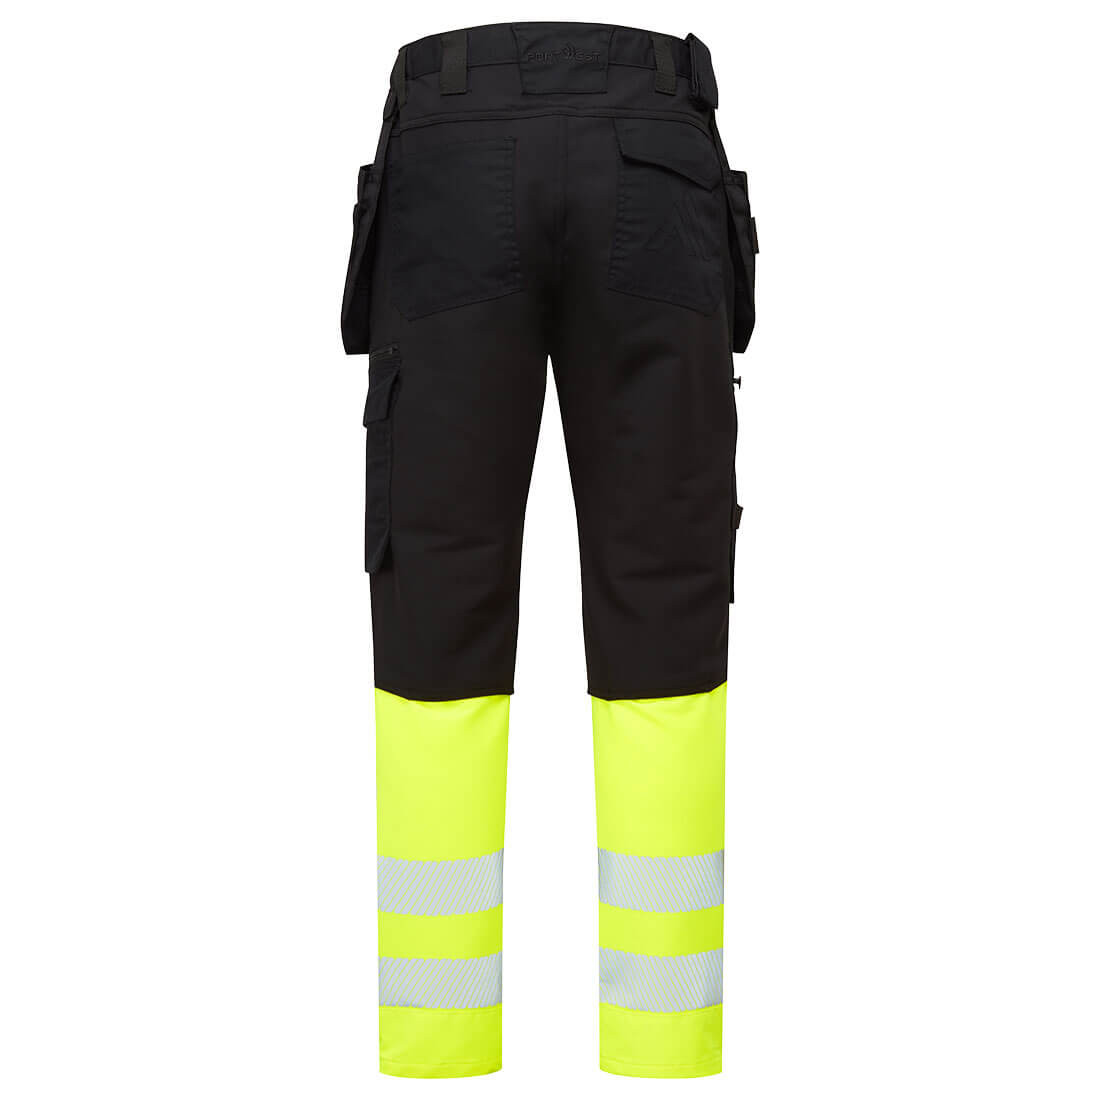 DX4 Warnschutz Handwerker Bundhose Klasse 1 - Arbeitskleidung